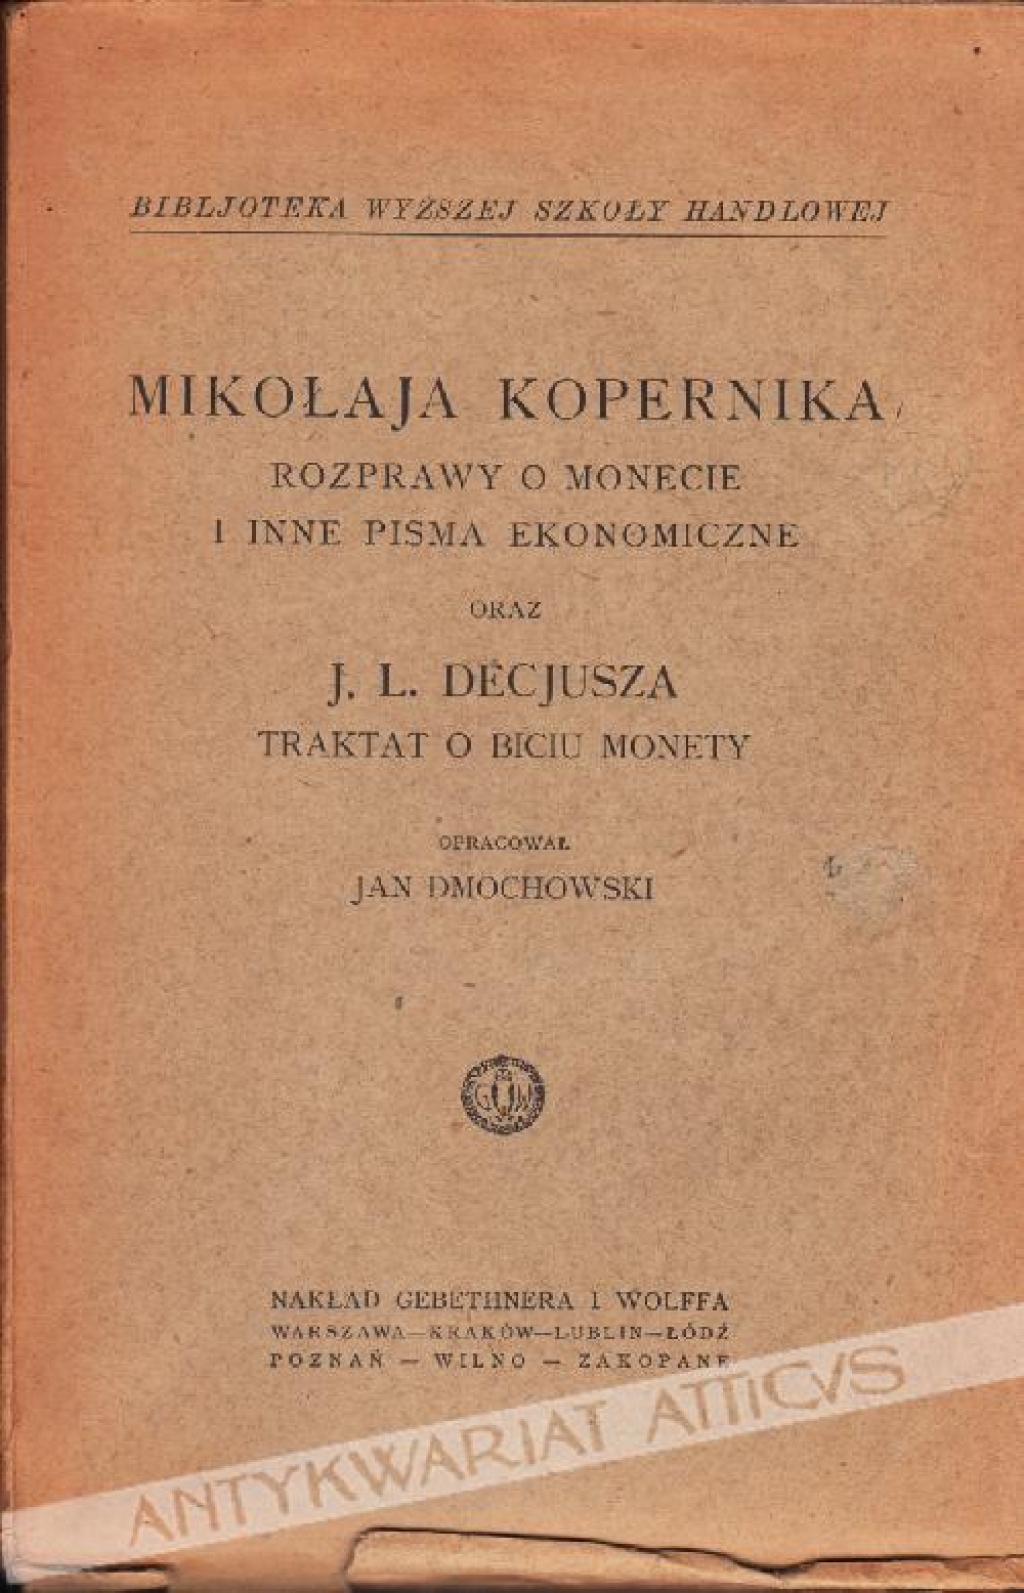 Mikołaja Kopernika Rozprawy o monecie i inne pisma ekonomiczne oraz J. L. Decjusza Traktat o biciu monety